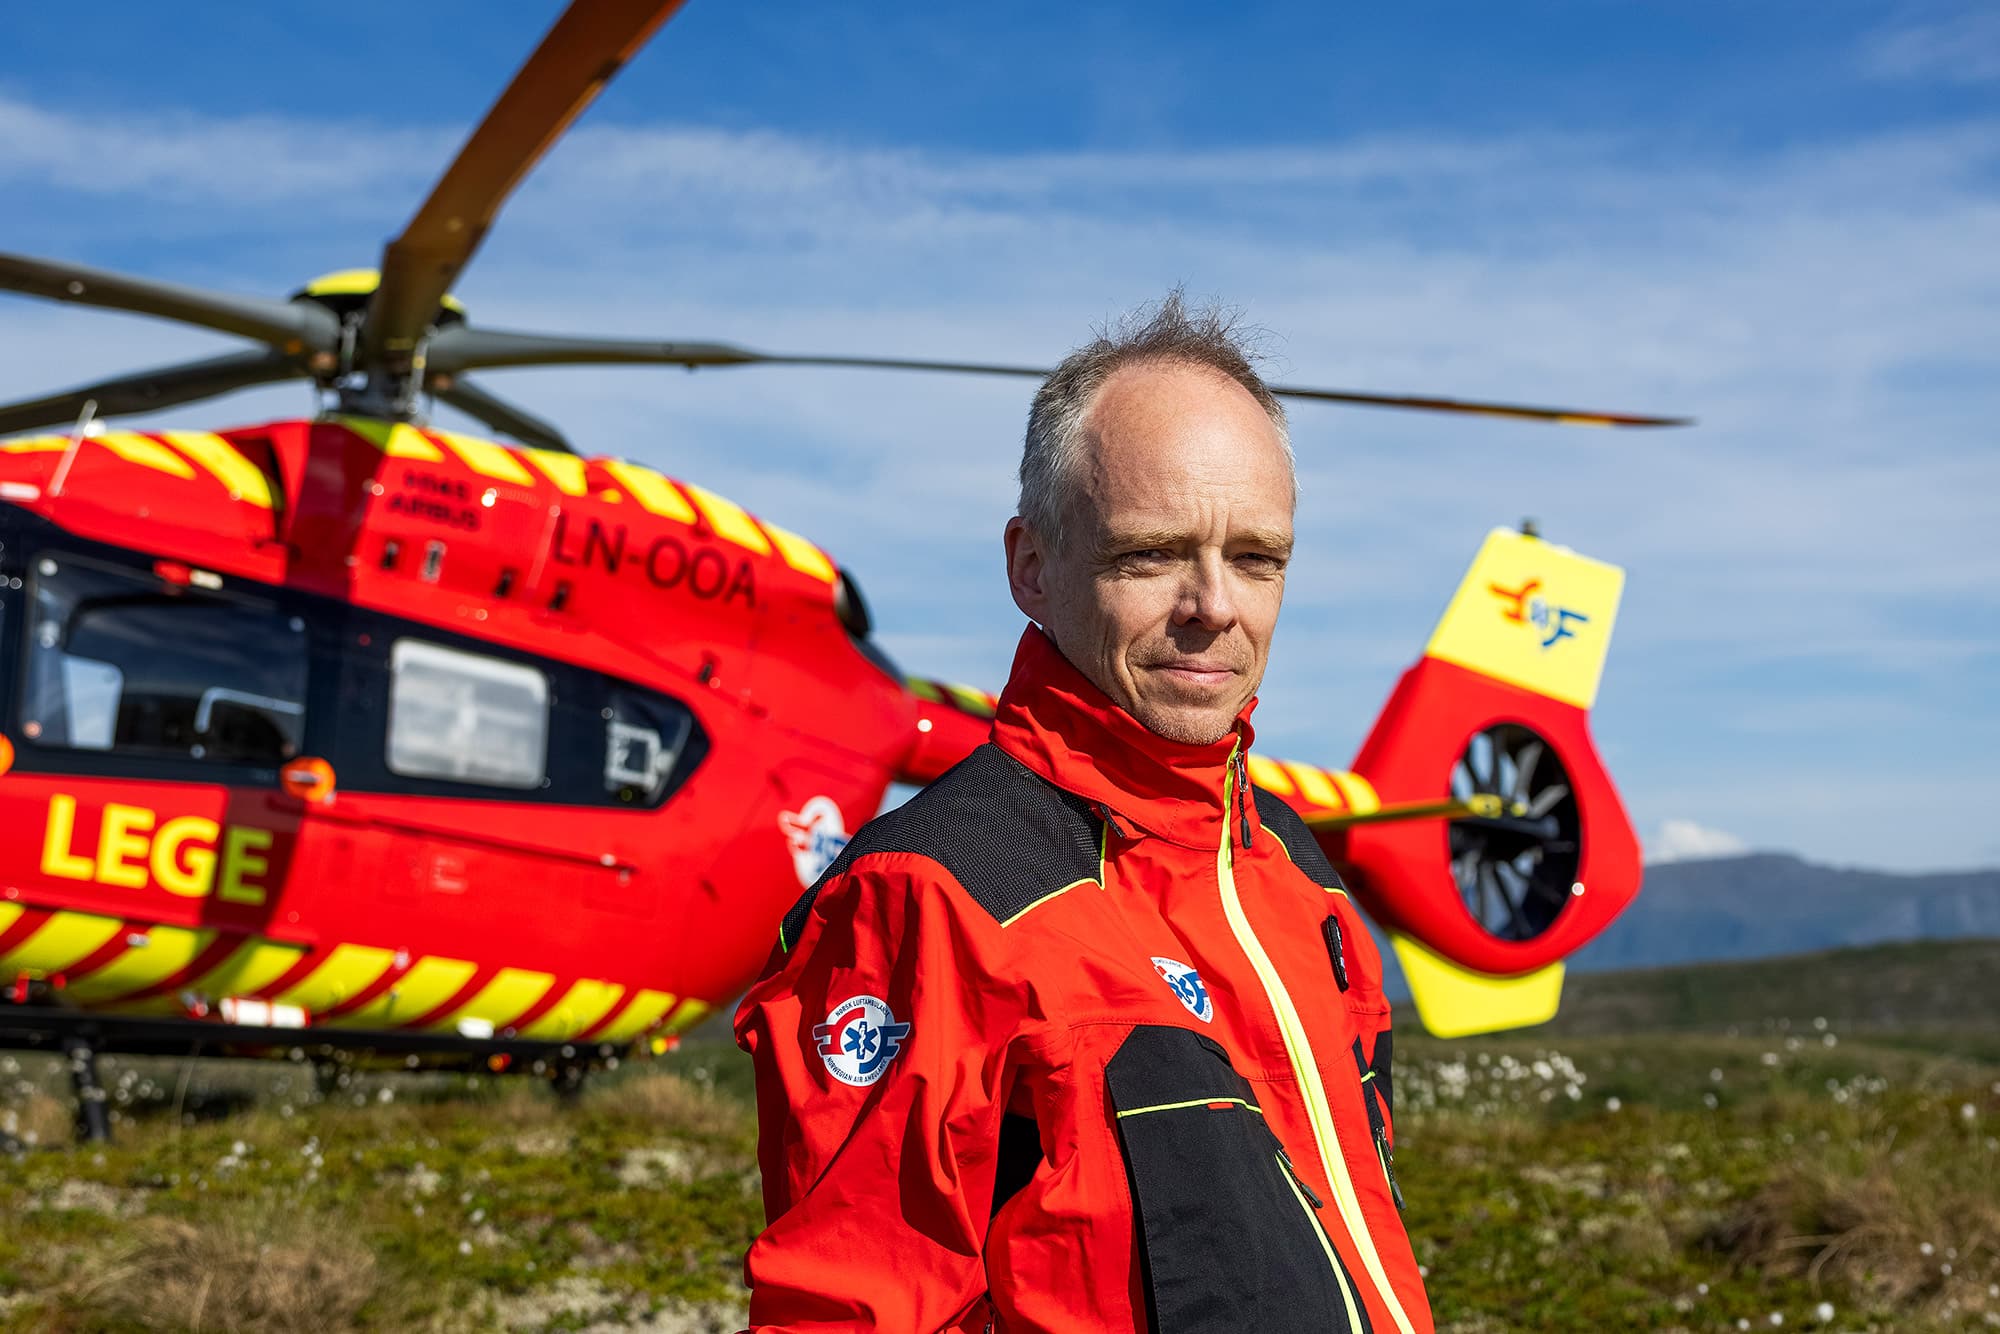 Sjeflege Stephen Sollid foran legehelikopteret, som har landet på en gresskledd slette.